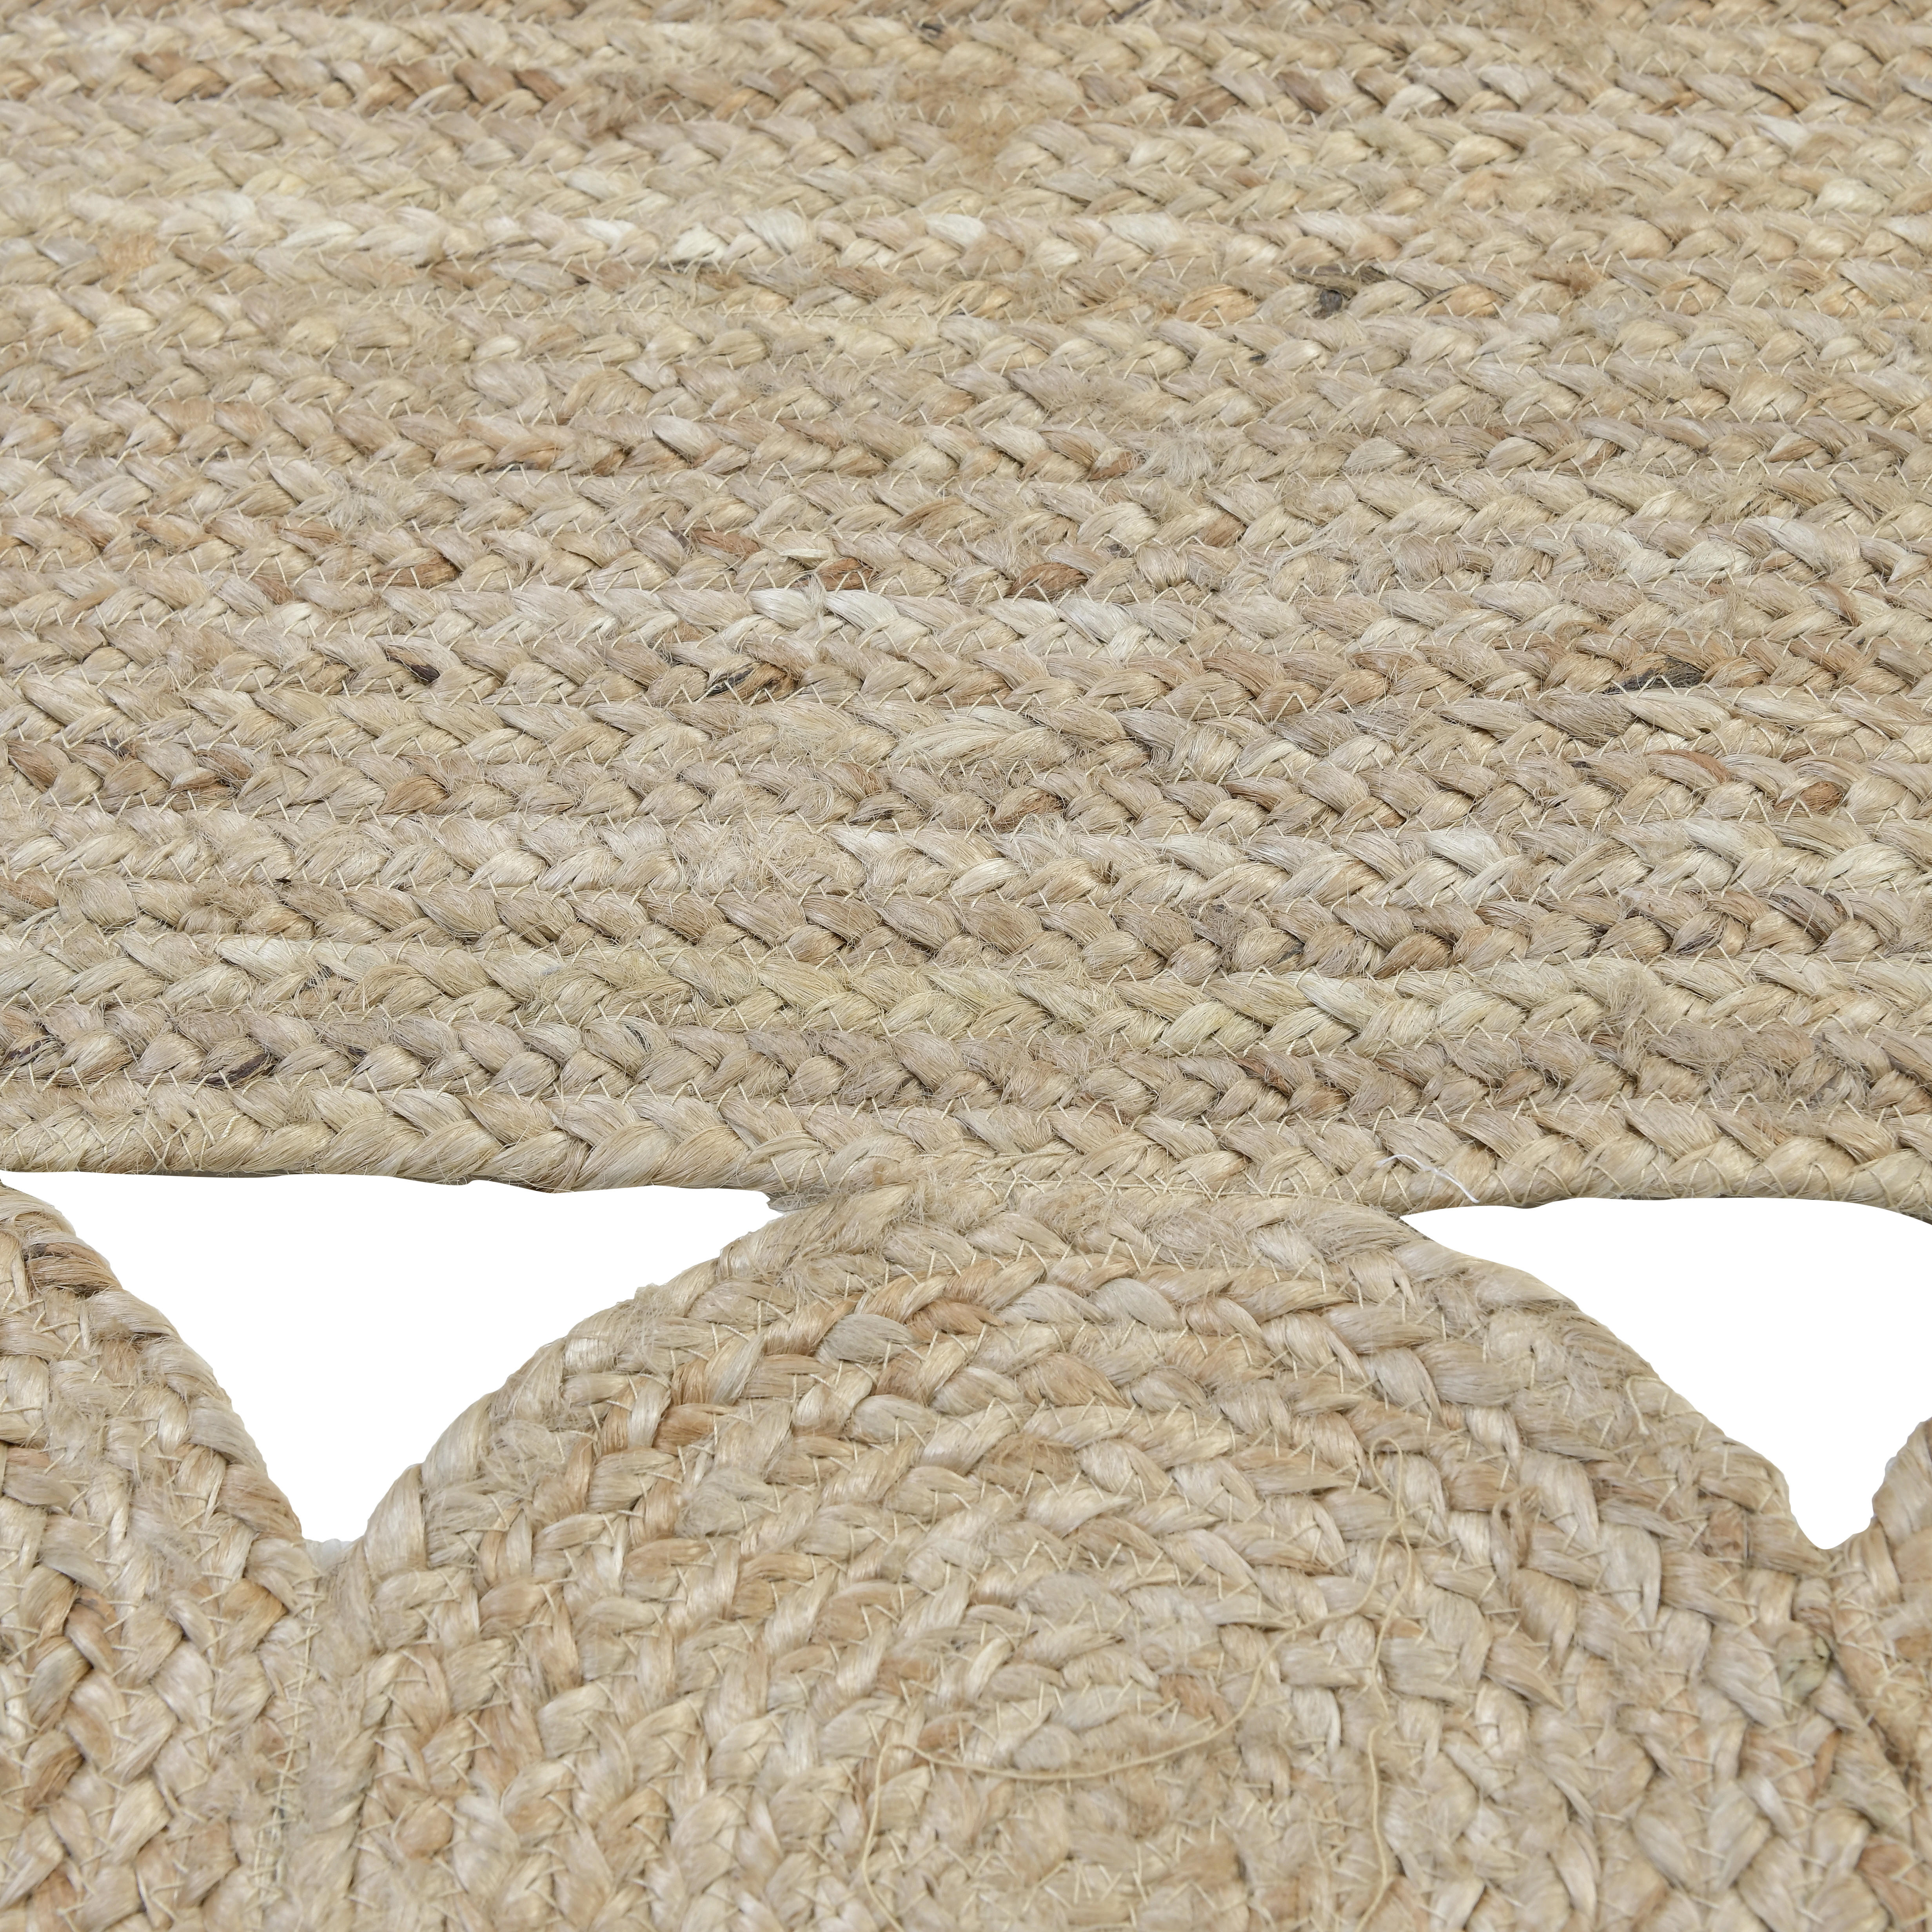 TEPPICH RUG  - Beige, Trend, Textil (120/180/2cm)